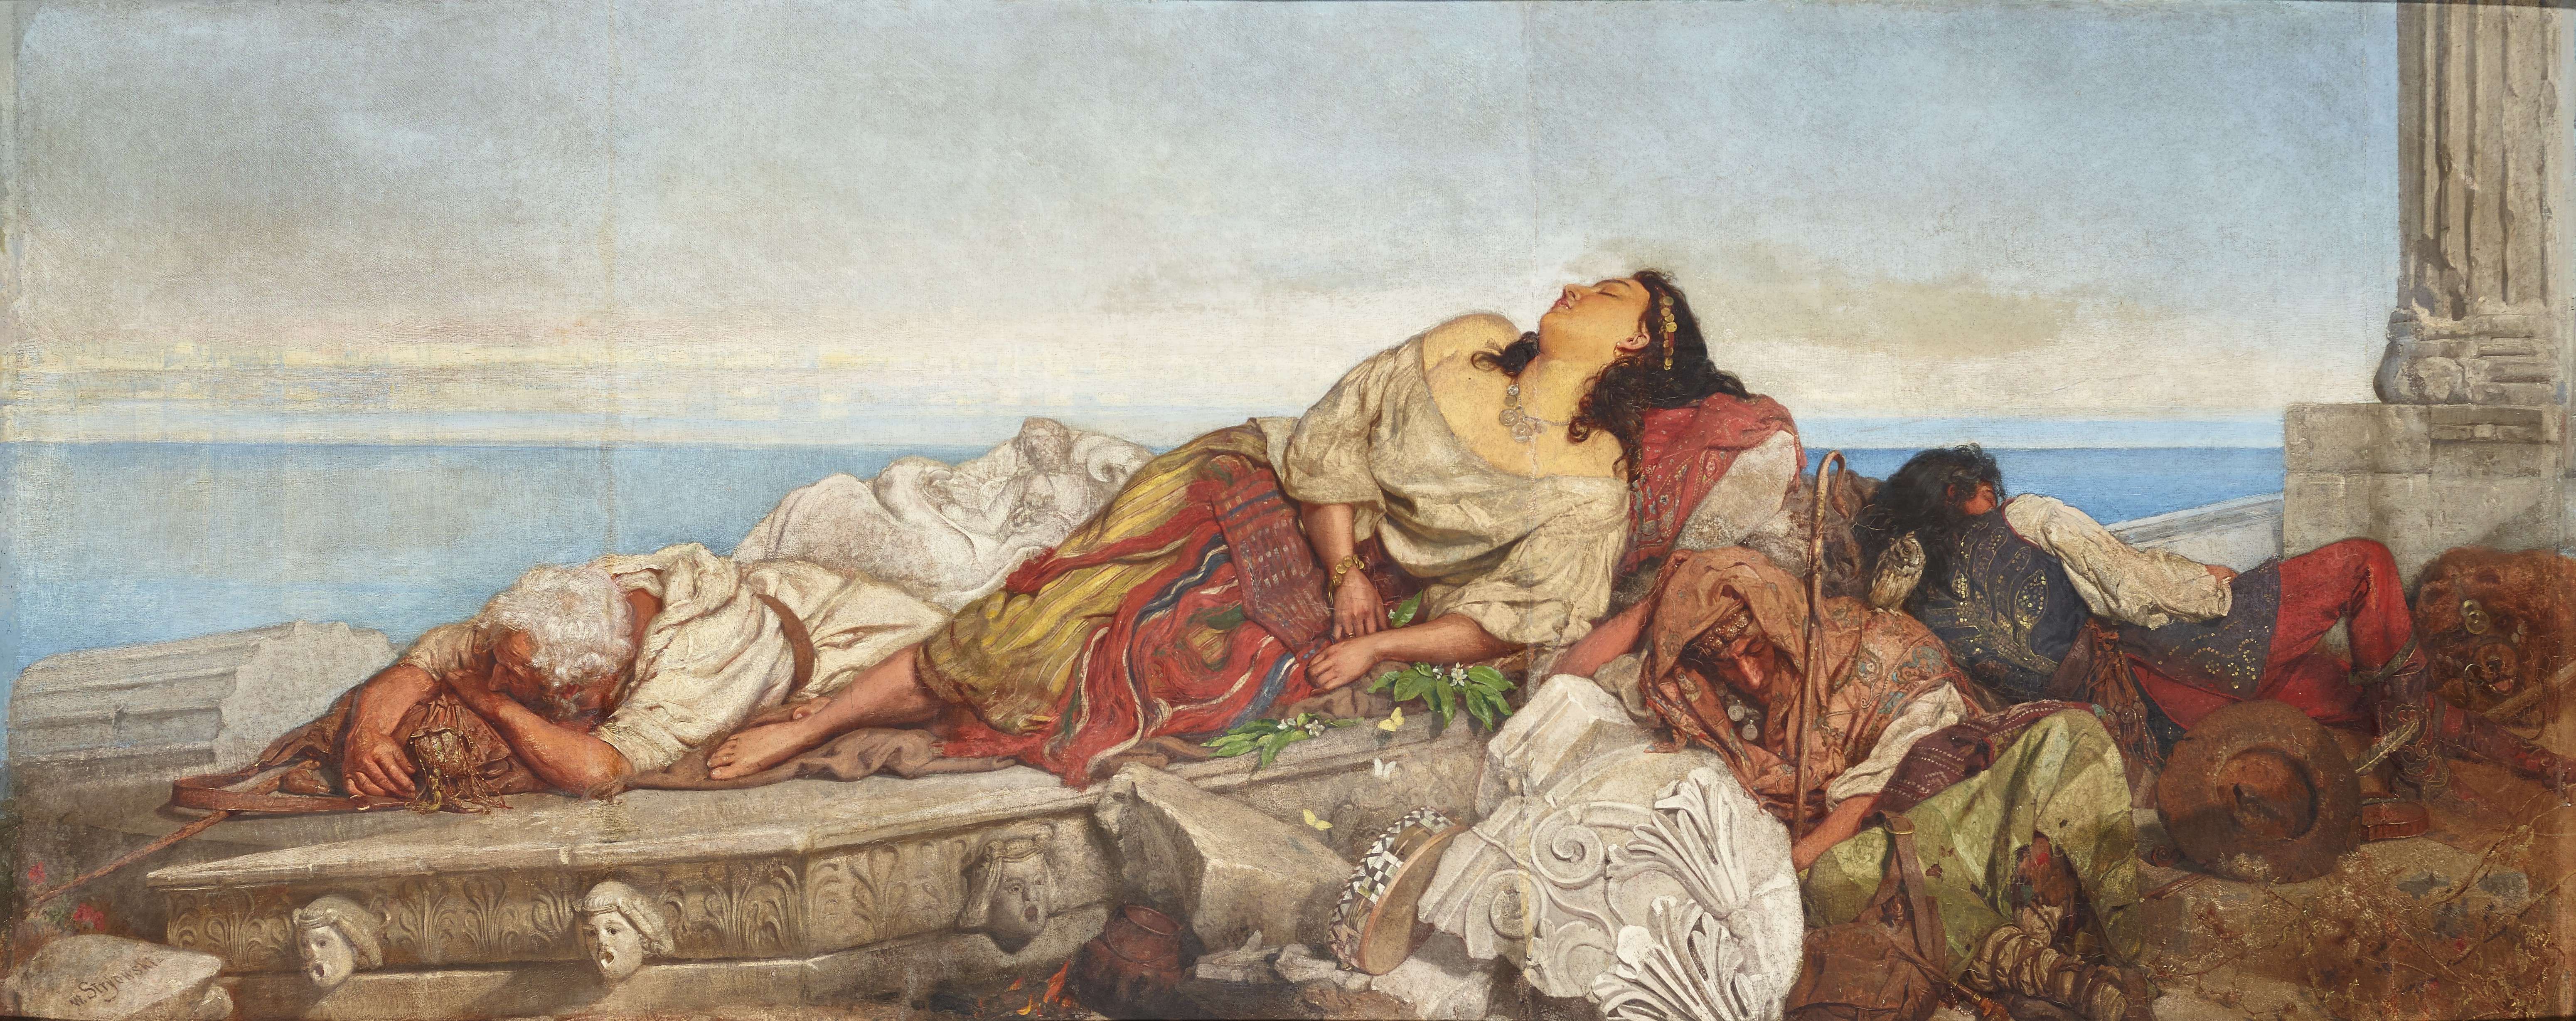 Kobieta leżąca na skale. Obraz Wilhelm August Stryowski